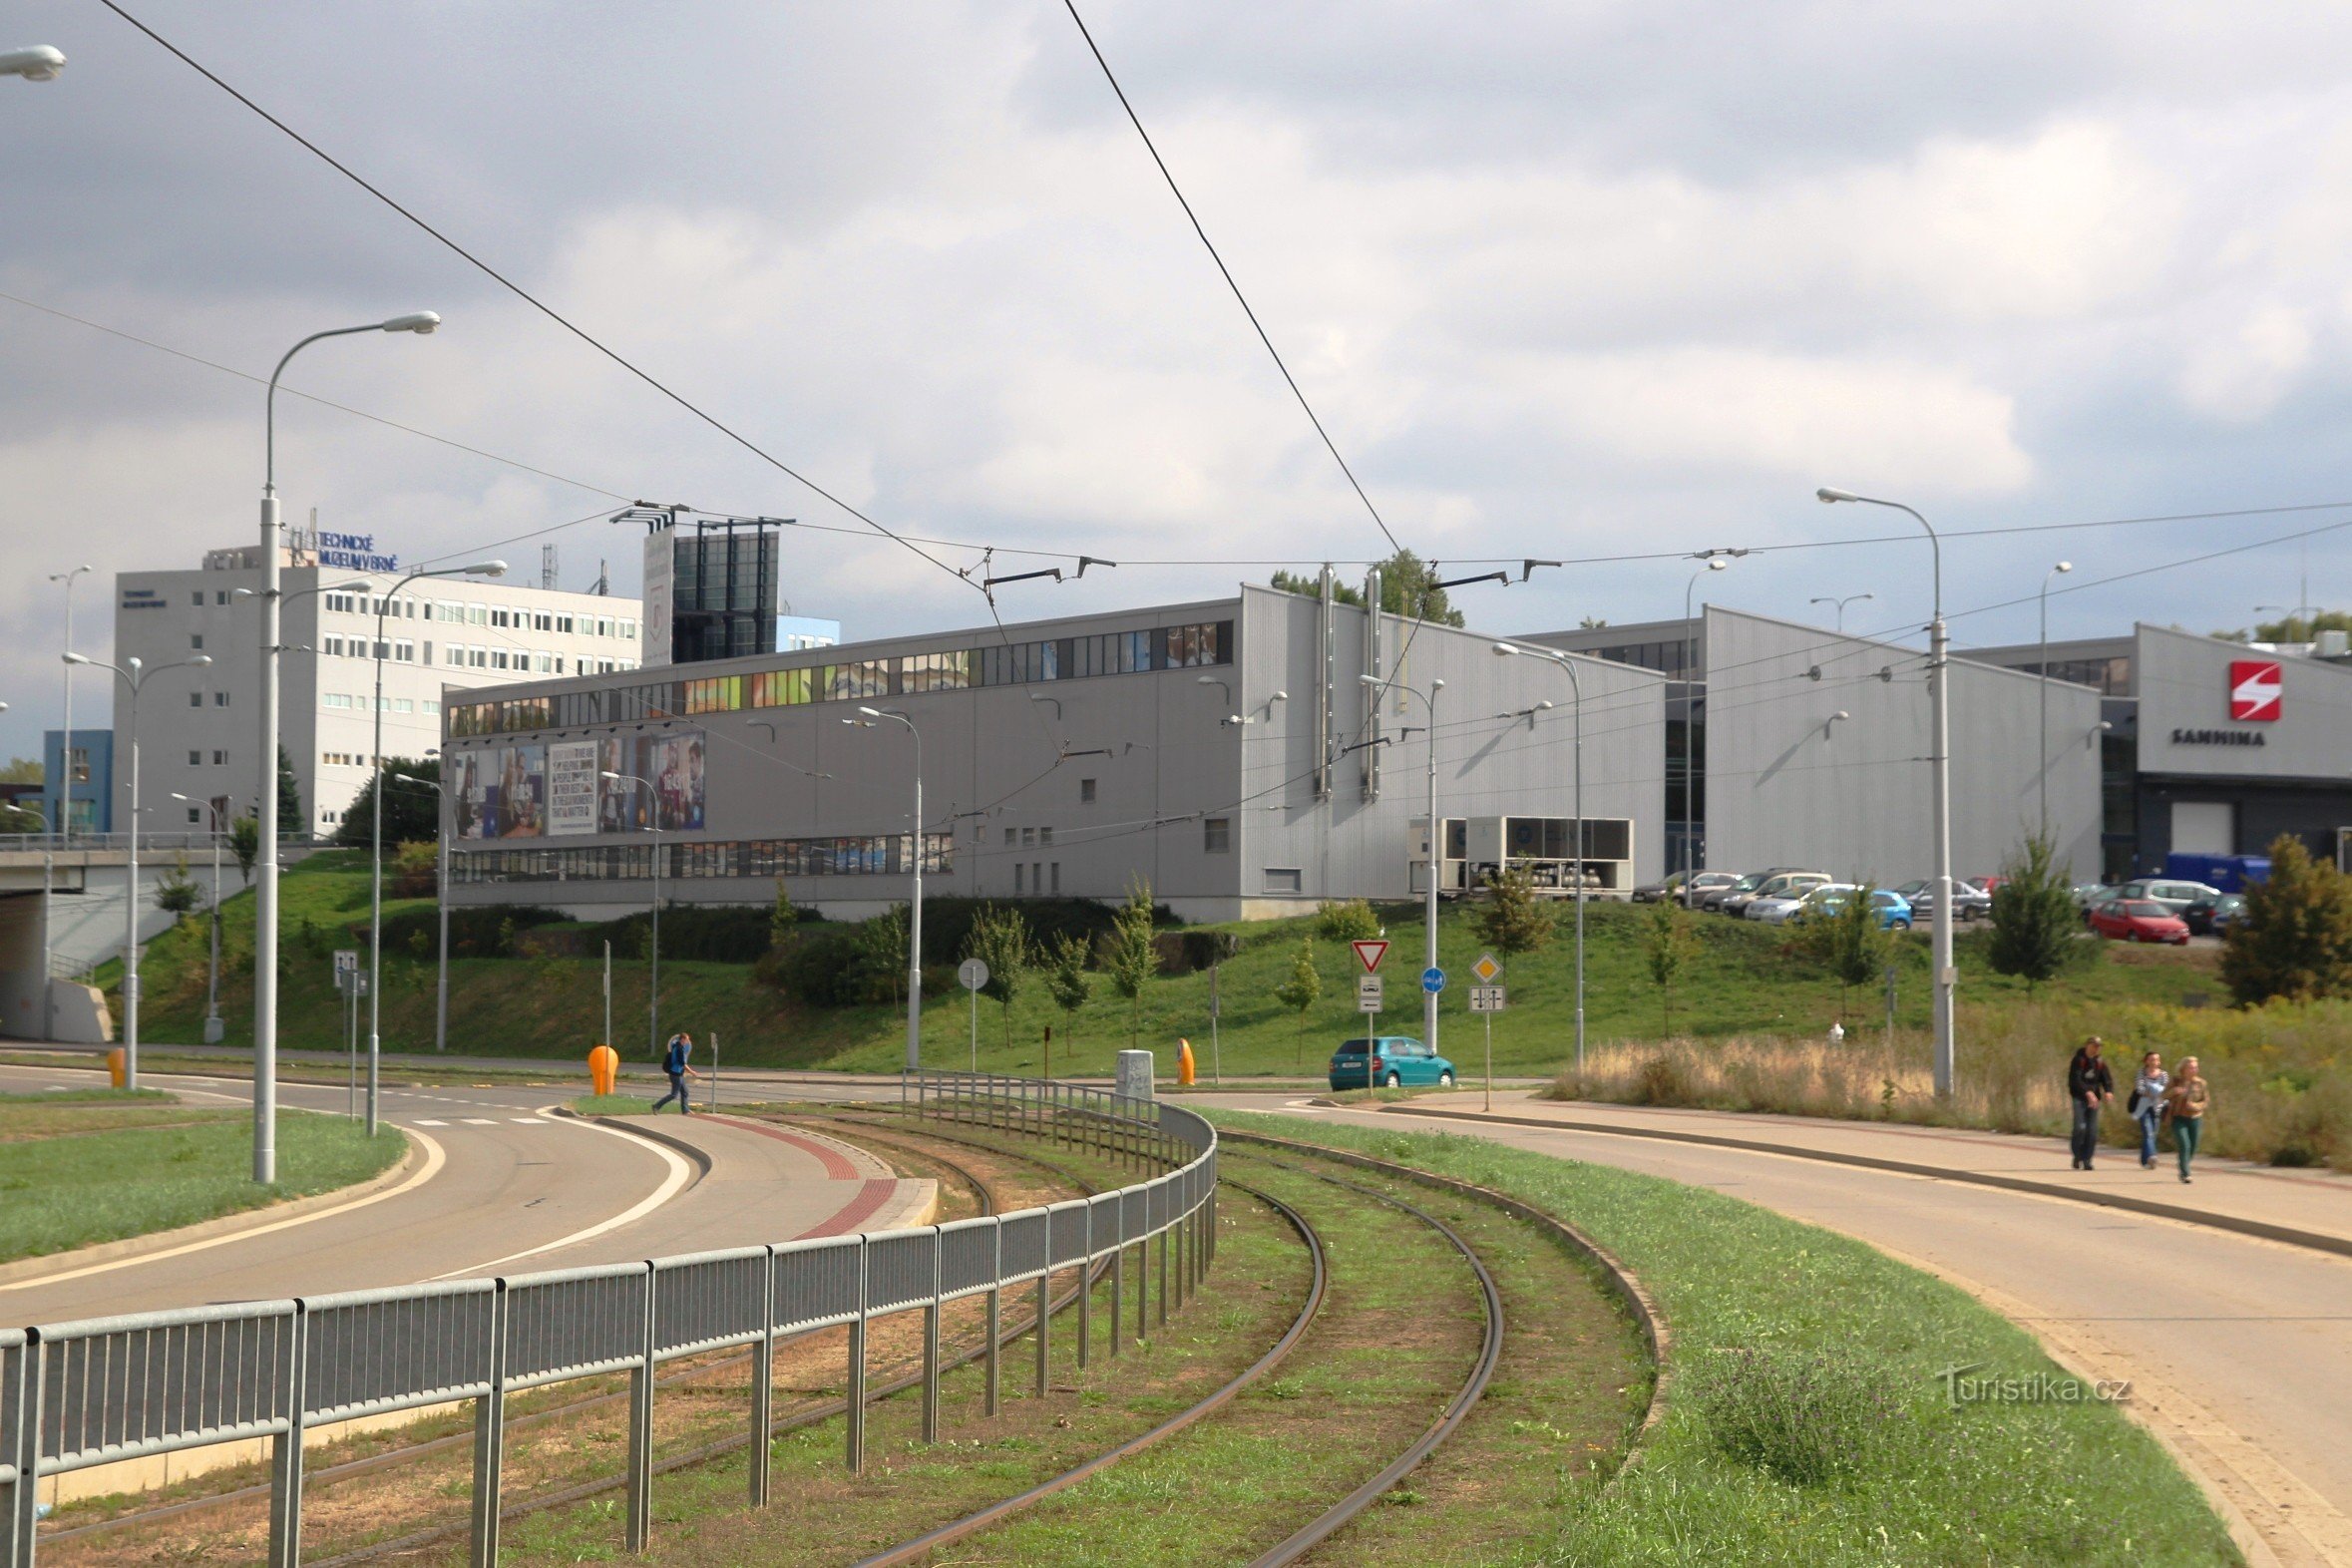 Parcul Tehnologic, în spatele lui clădirea Muzeului Tehnic